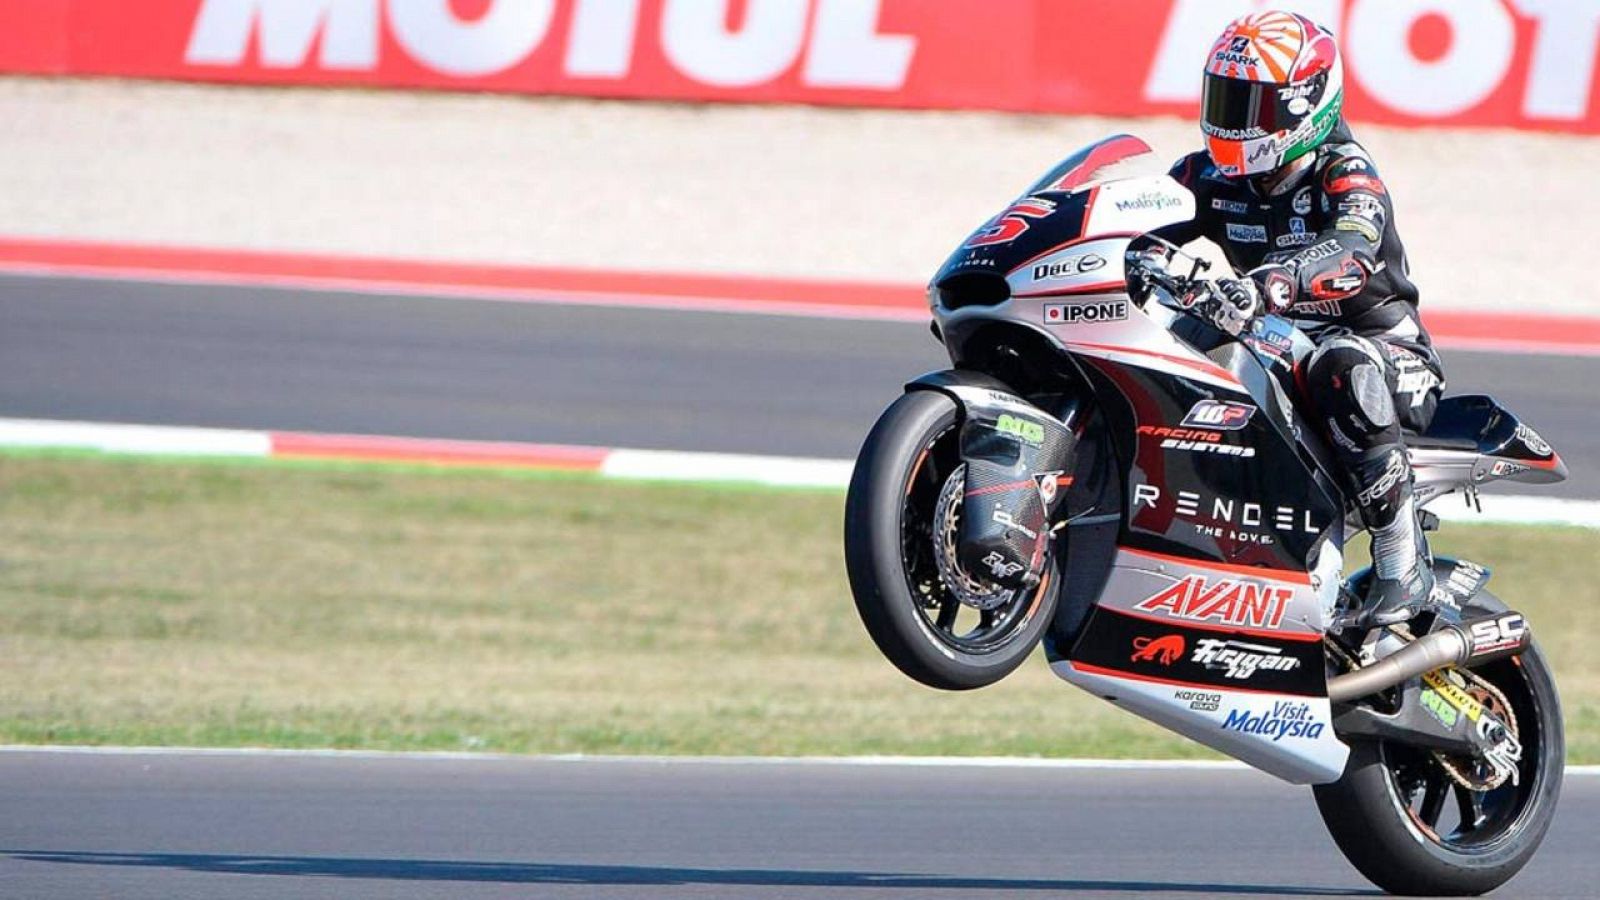 El piloto francés de Moto2 Johann Zarco se ha impuesto en el circuito de Misano "Marco Simoncelli".